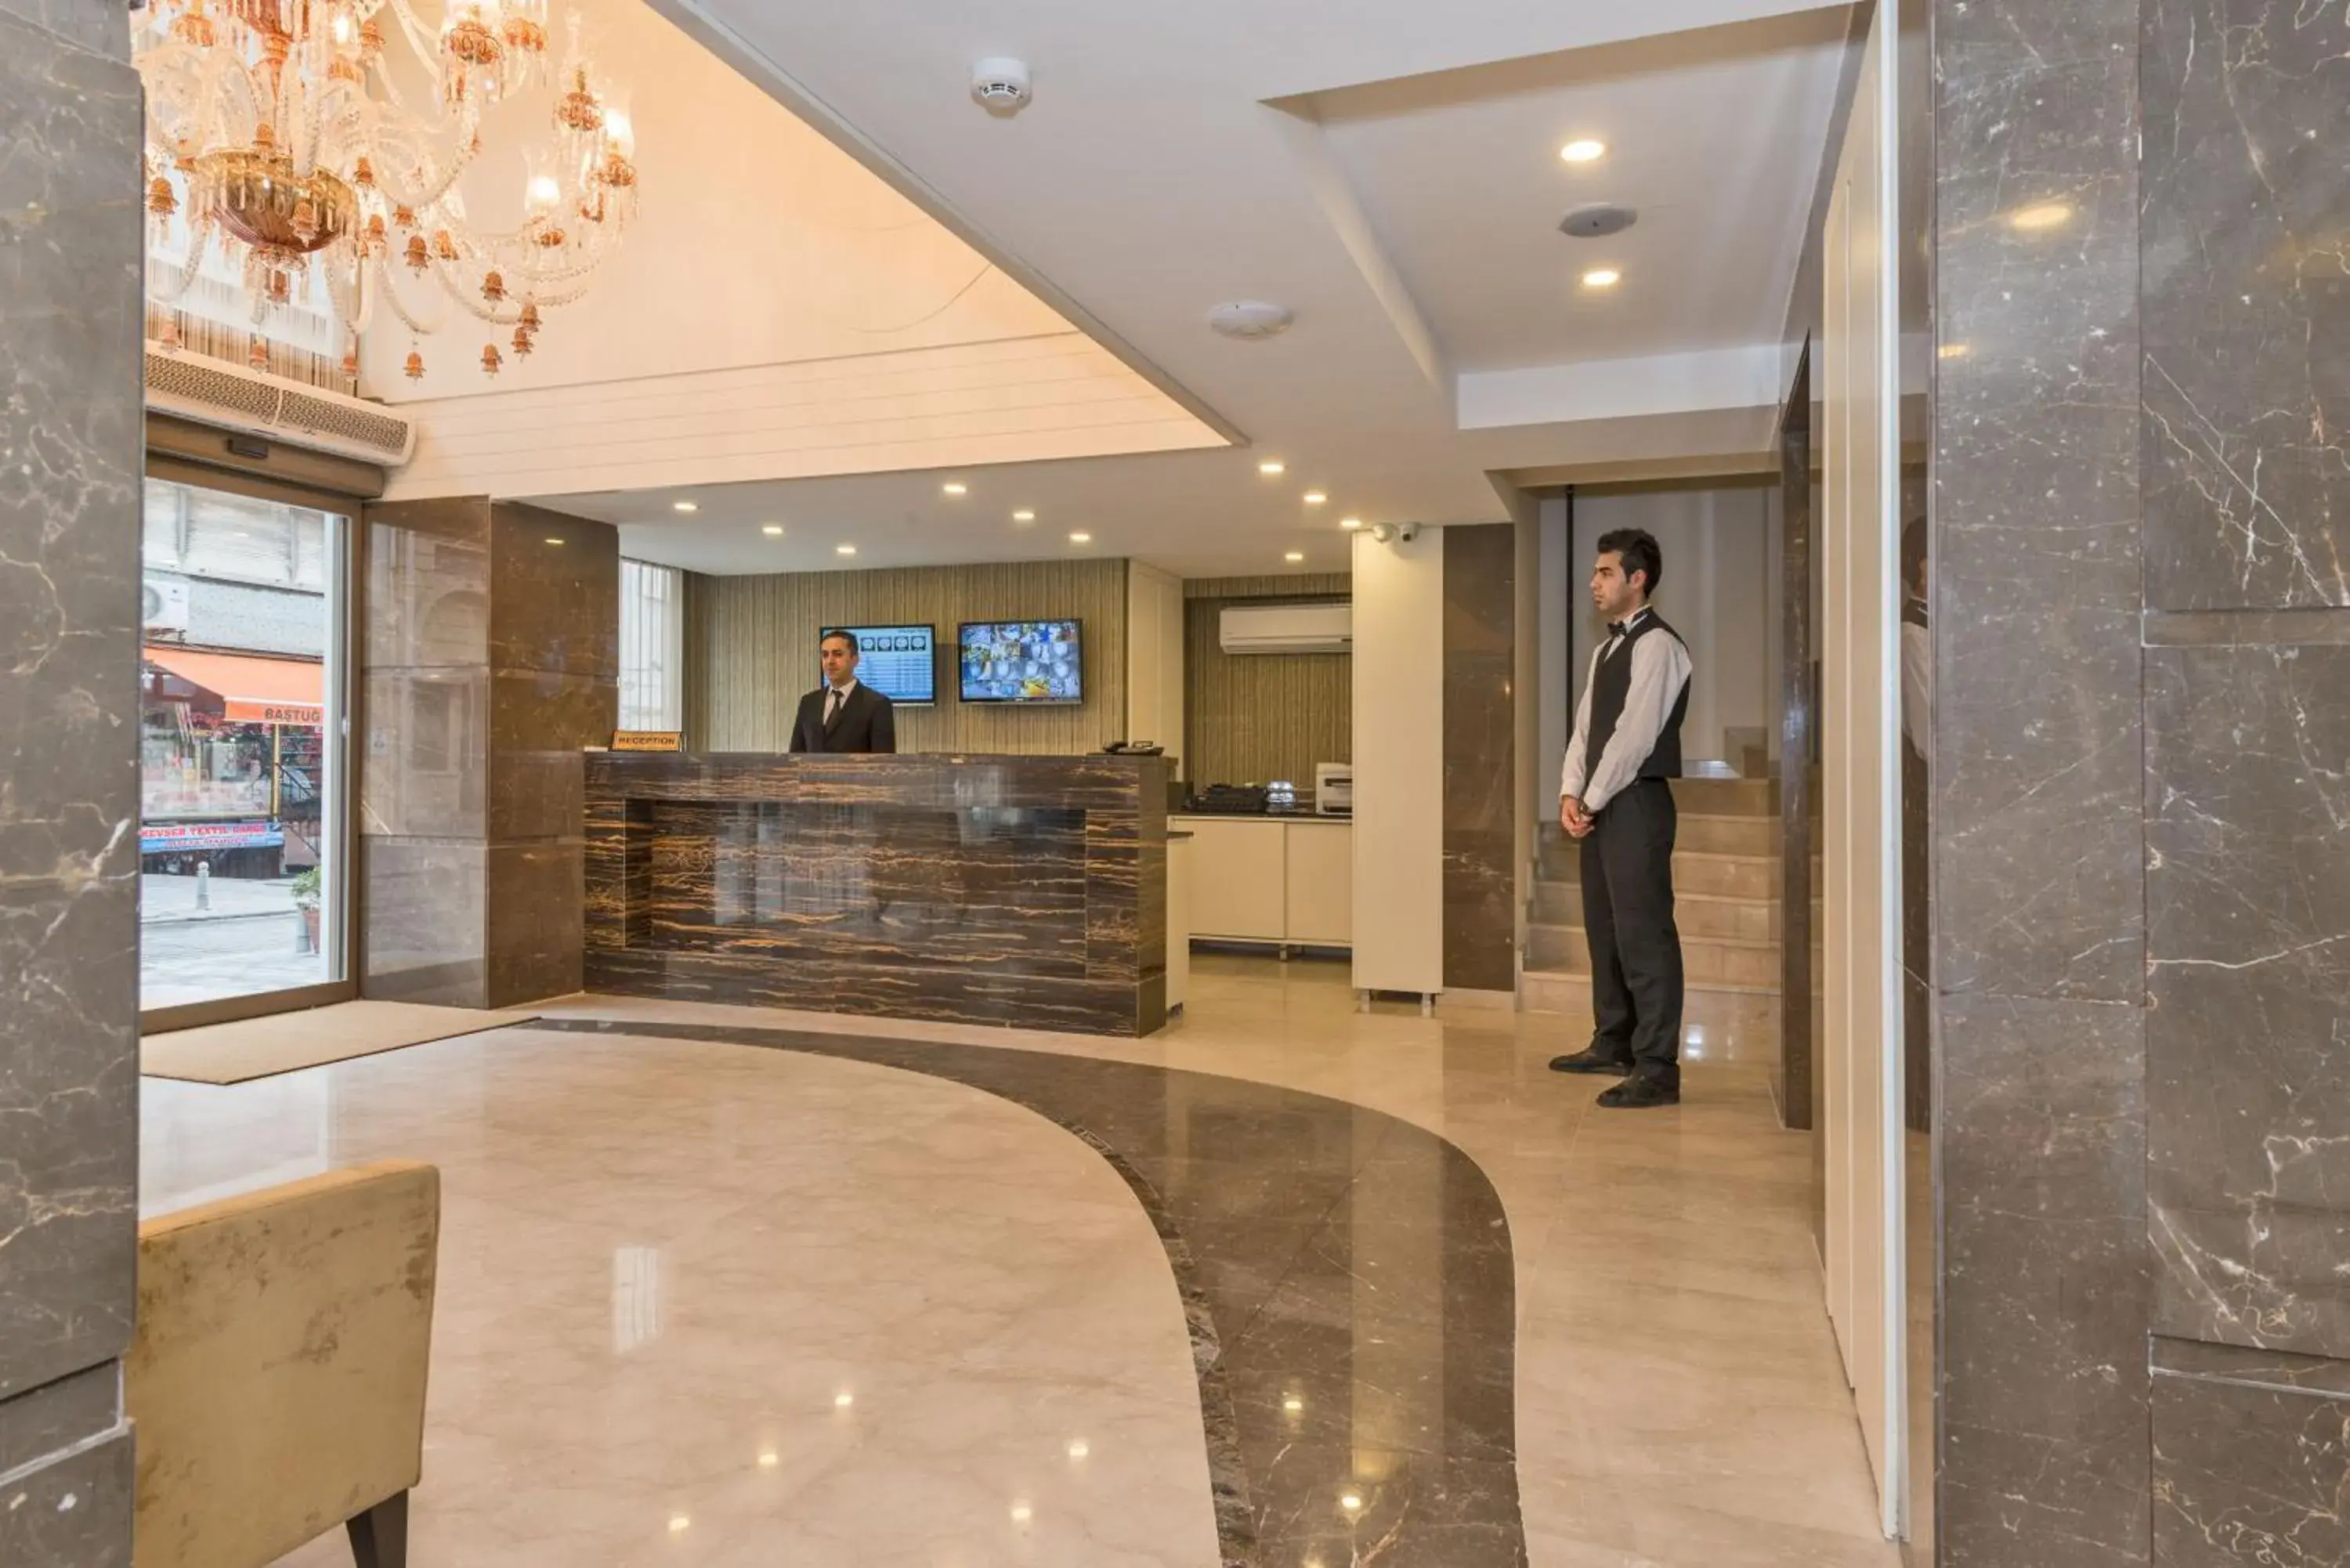 Lobby or reception, Lobby/Reception in Bisetun Hotel